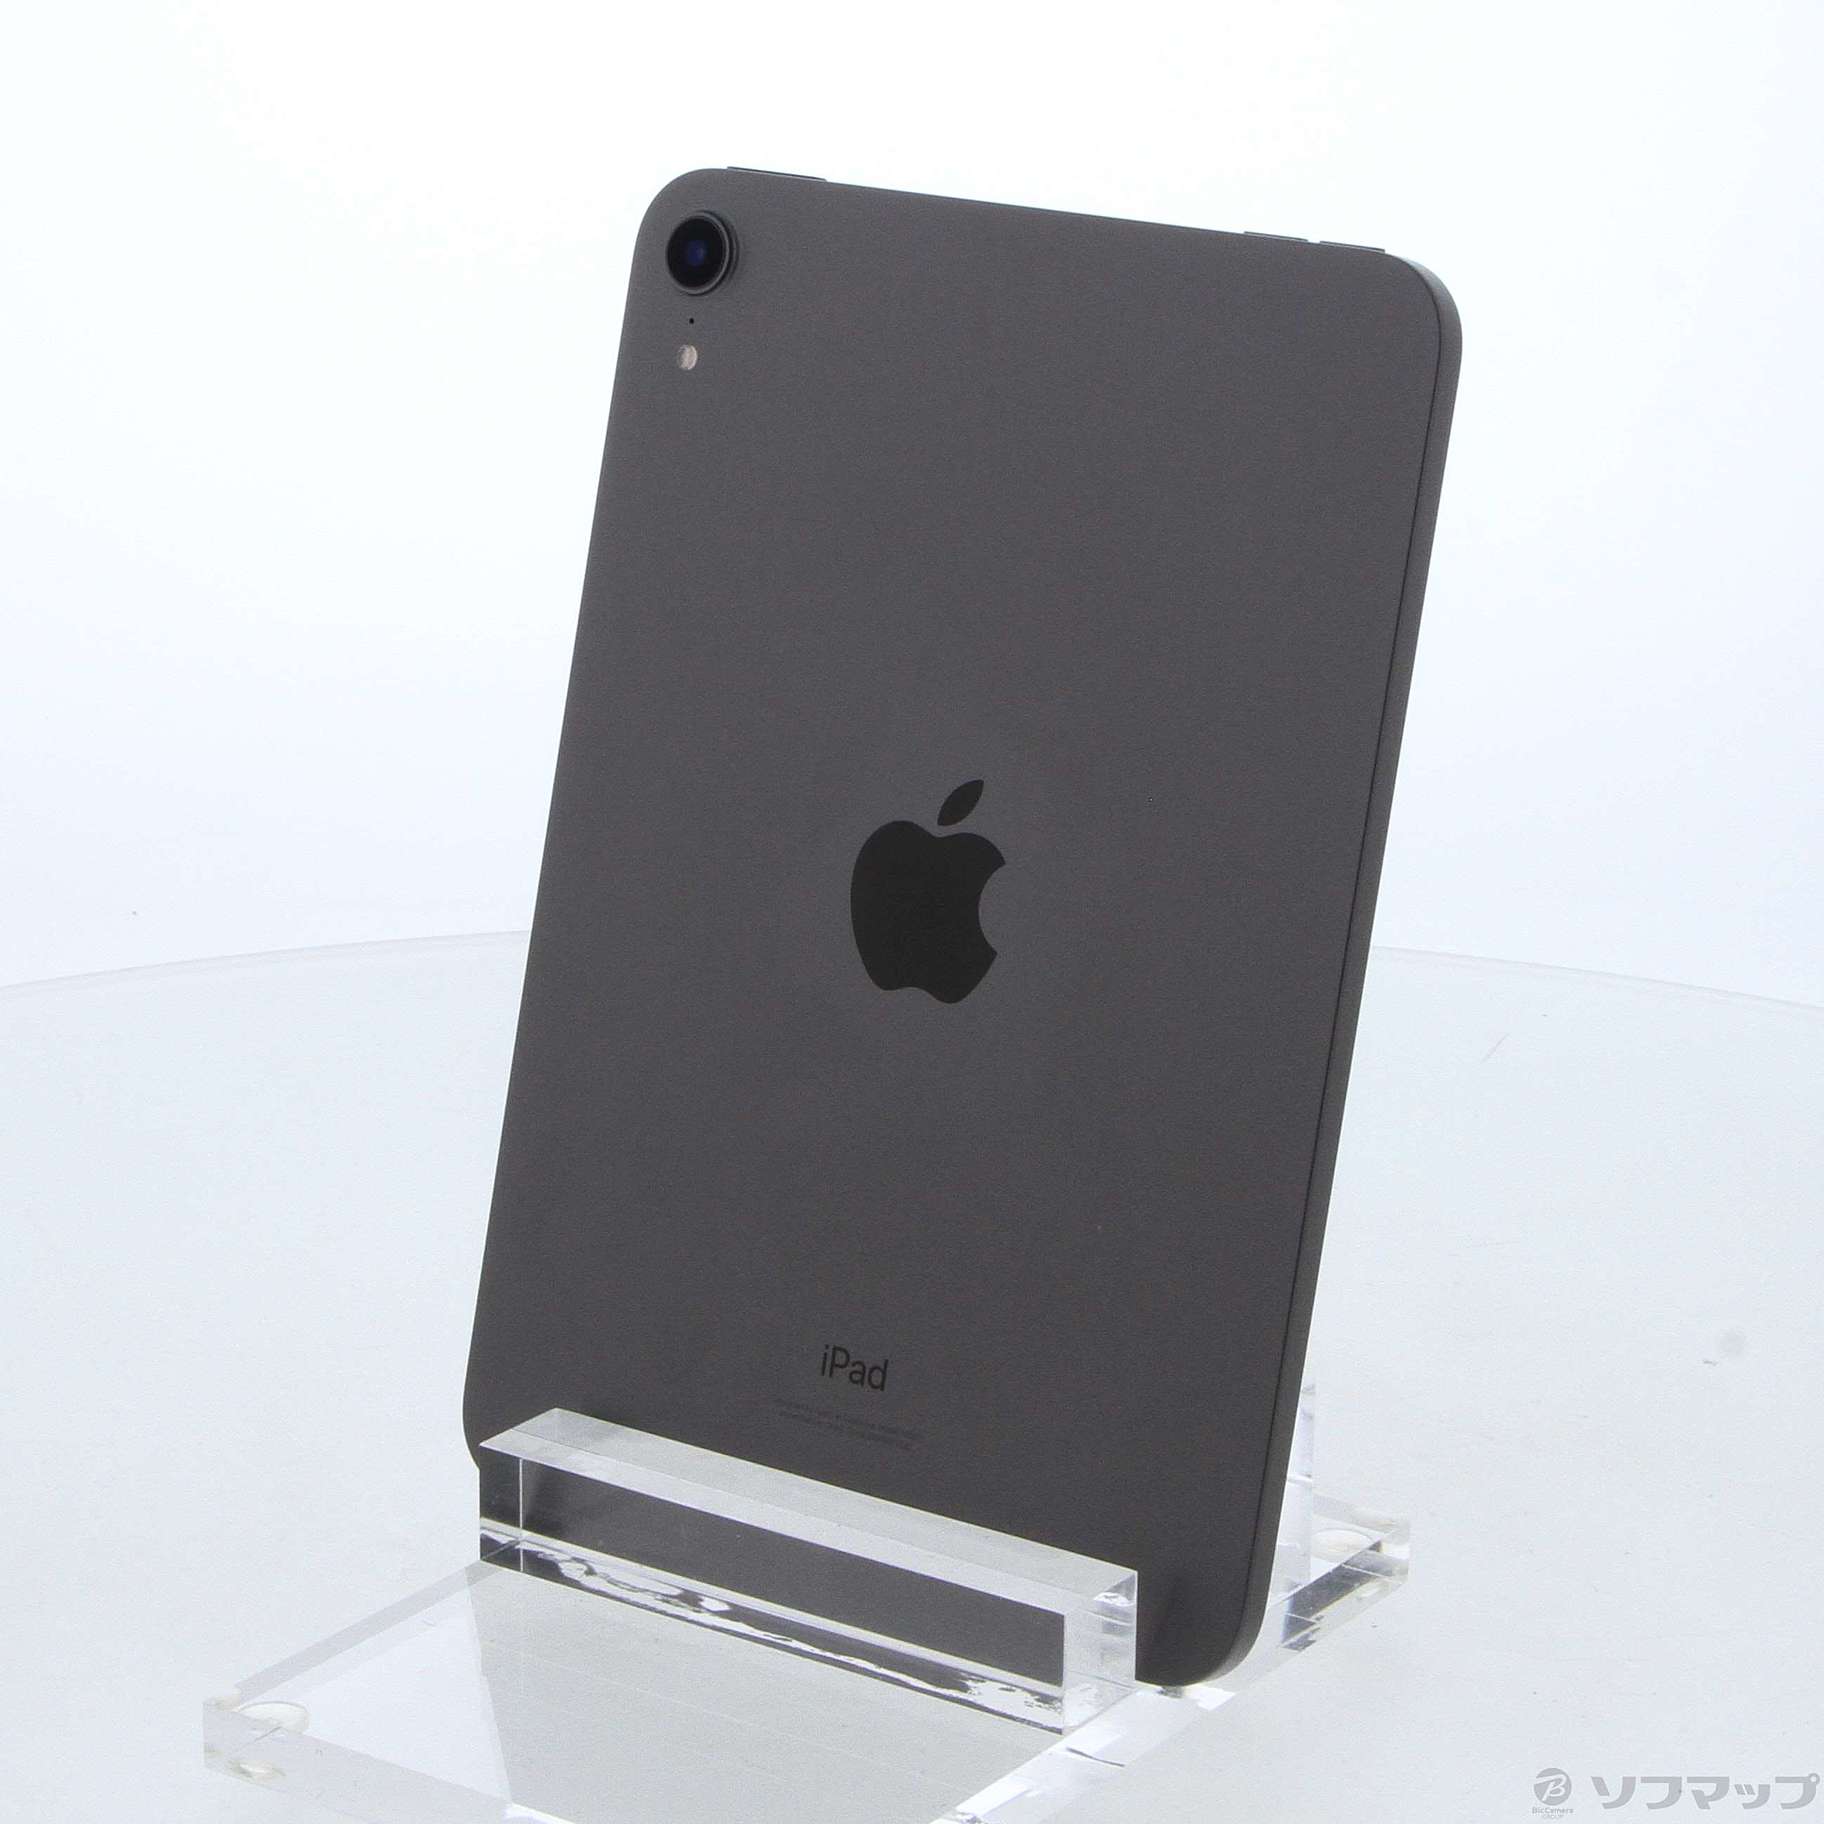 Apple Wi-Fi iPad mini 第6世代 256GB スペースグレイPC/タブレット 